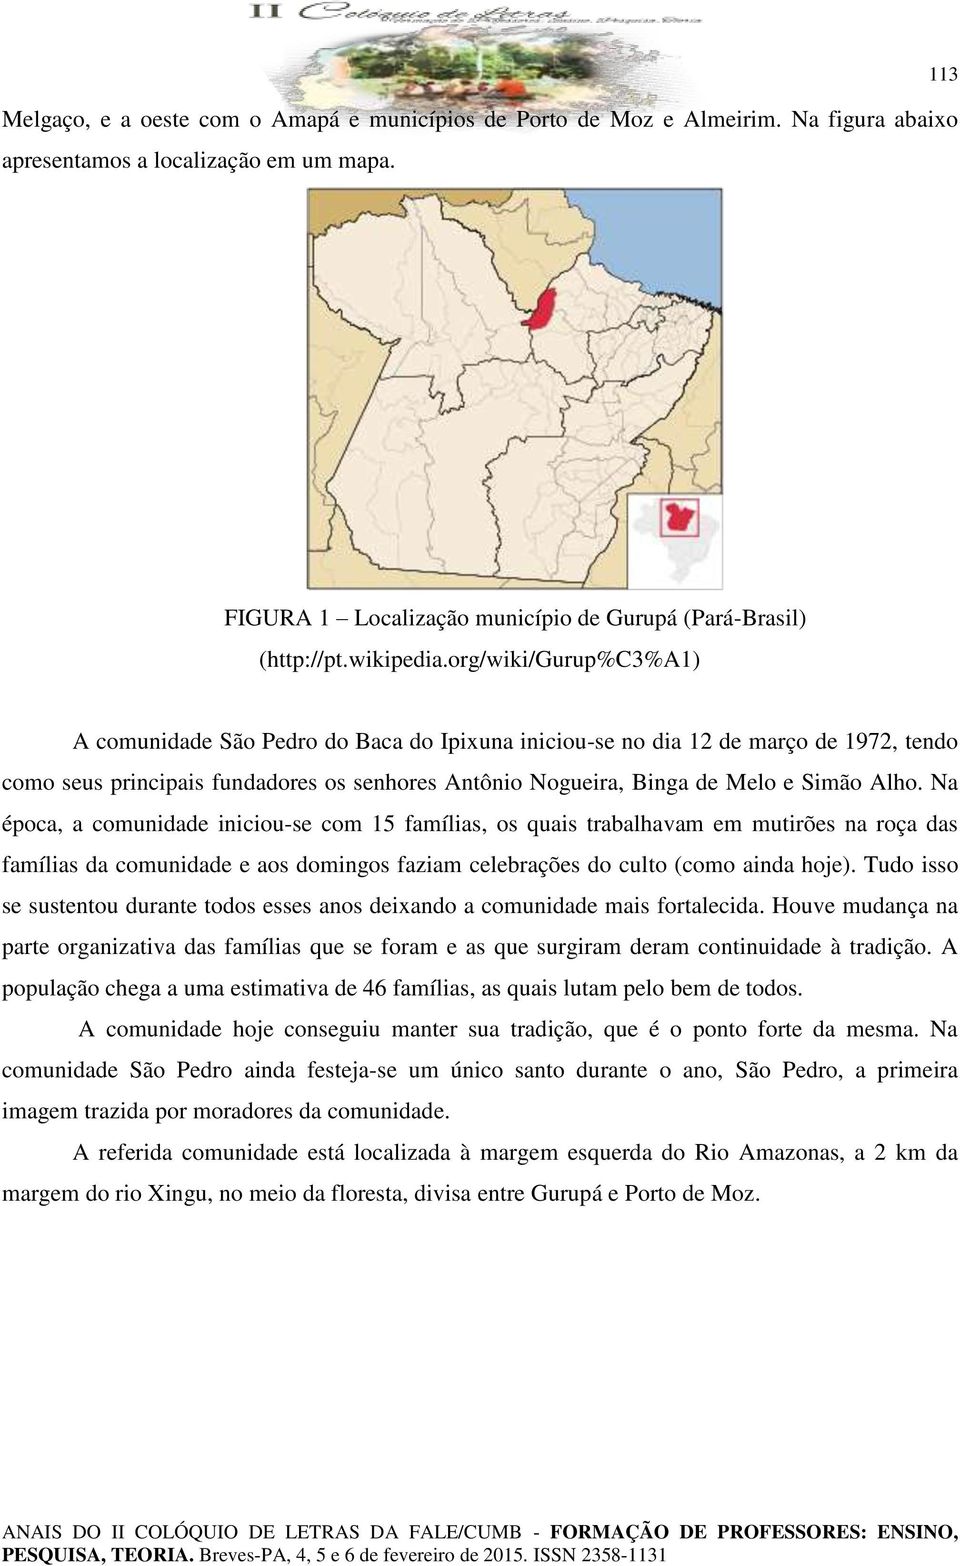 org/wiki/gurup%c3%a1) A comunidade São Pedro do Baca do Ipixuna iniciou-se no dia 12 de março de 1972, tendo como seus principais fundadores os senhores Antônio Nogueira, Binga de Melo e Simão Alho.